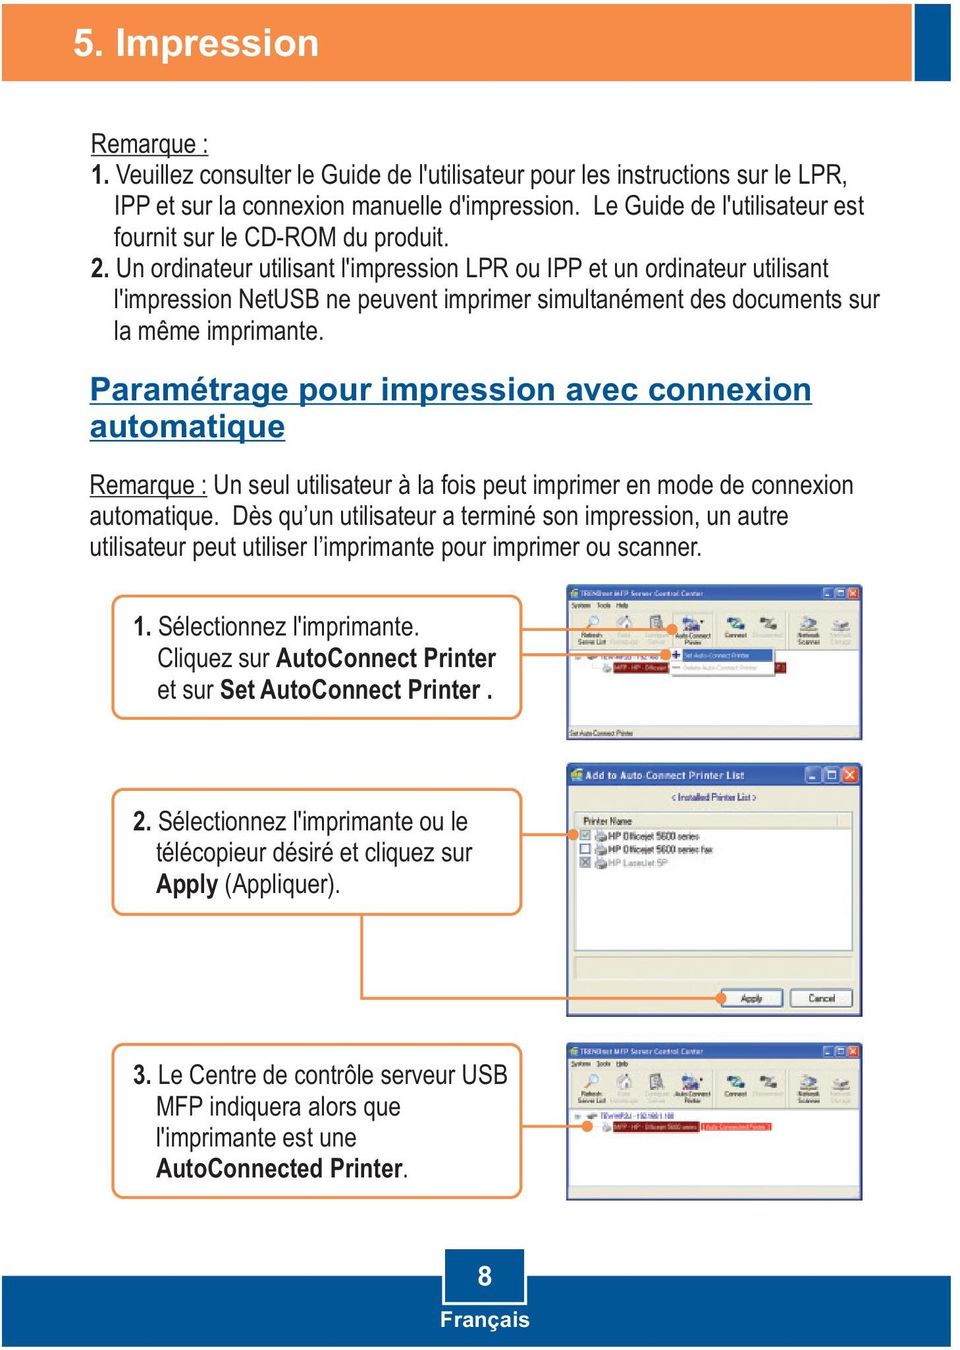 Un ordinateur utilisant l'impression LPR ou IPP et un ordinateur utilisant l'impression NetUSB ne peuvent imprimer simultanément des documents sur la même imprimante.